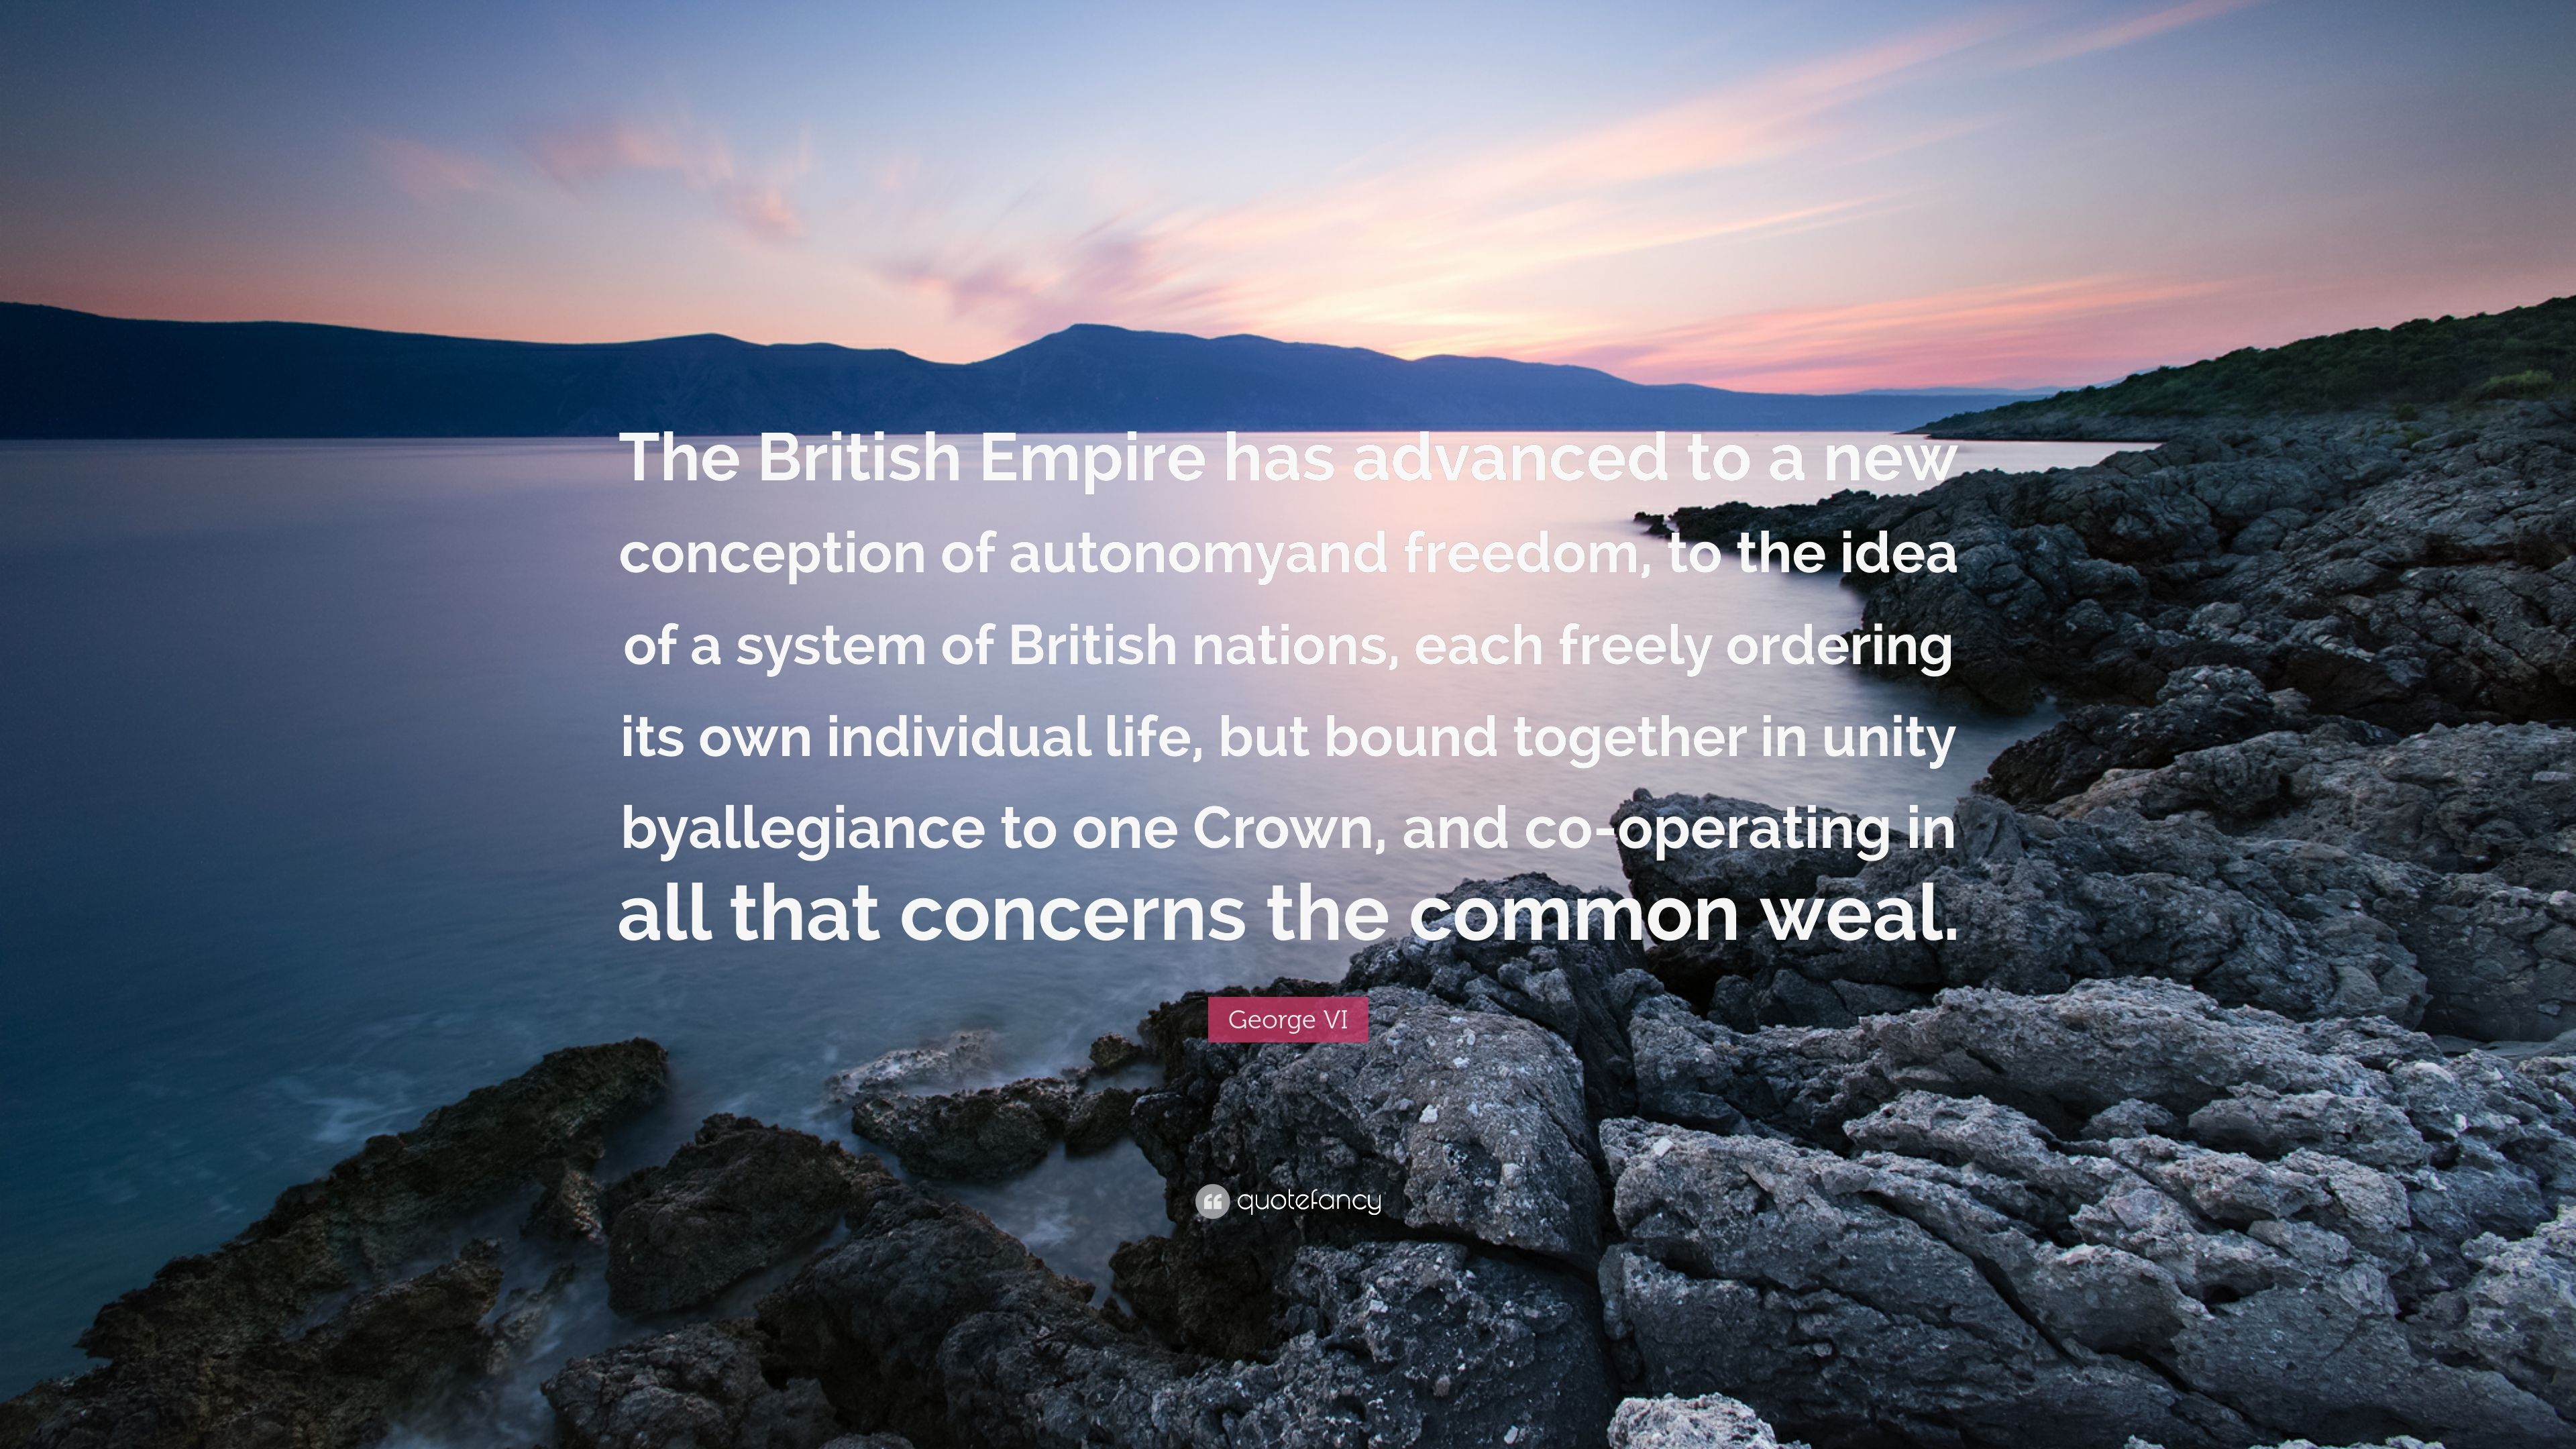 George VI Quote: “The British Empire .quotefancy.com